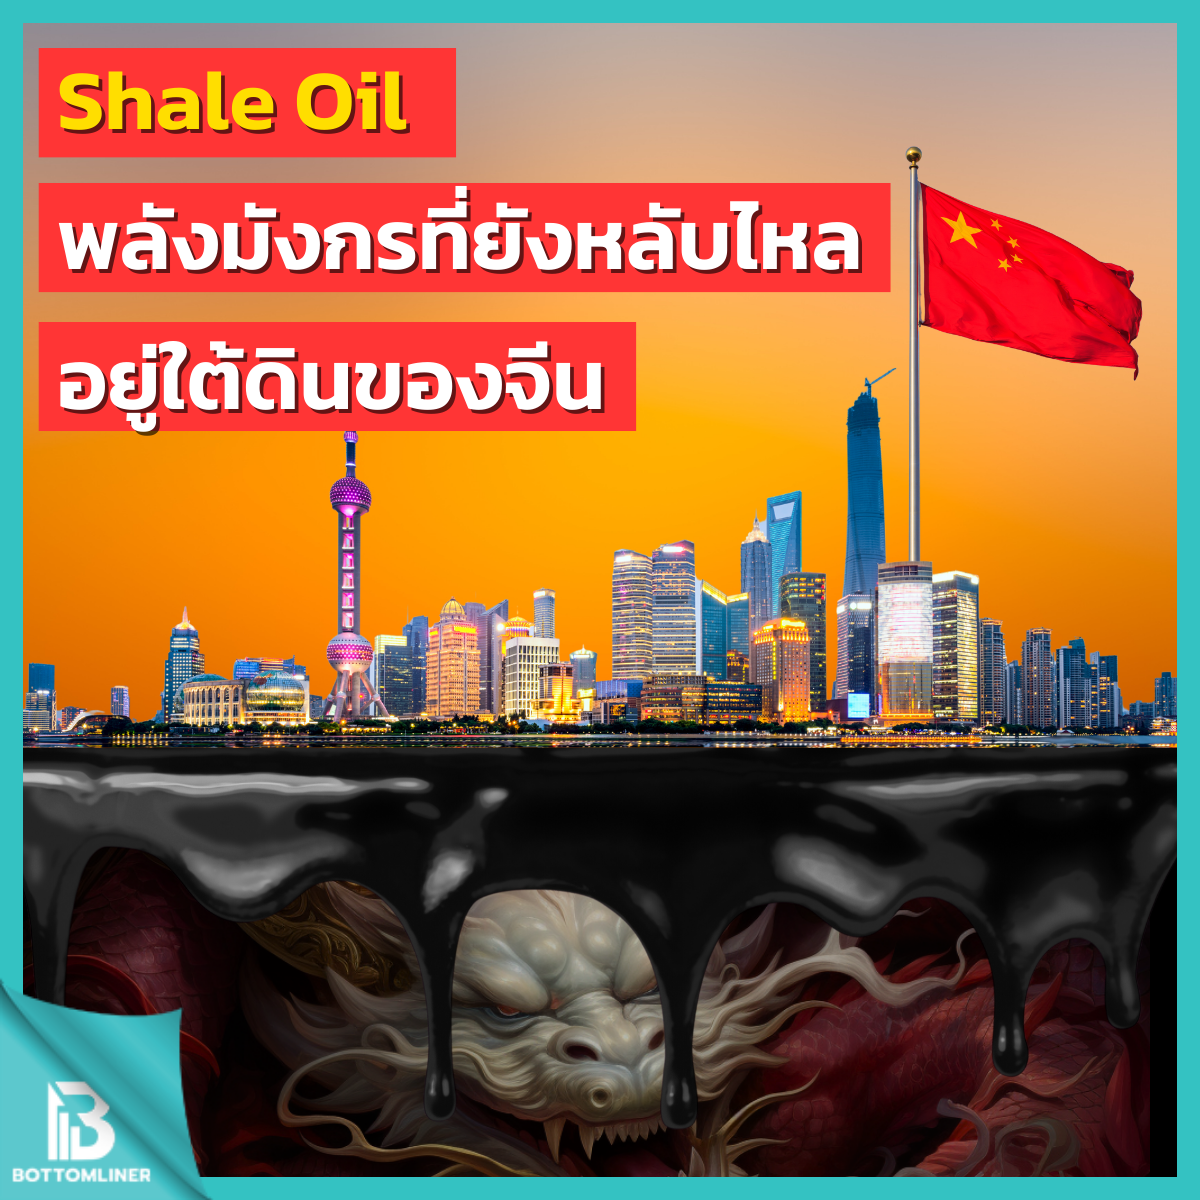 Shale Oil พลังมังกรที่ยังหลับไหลอยู่ใต้ดินของจีน